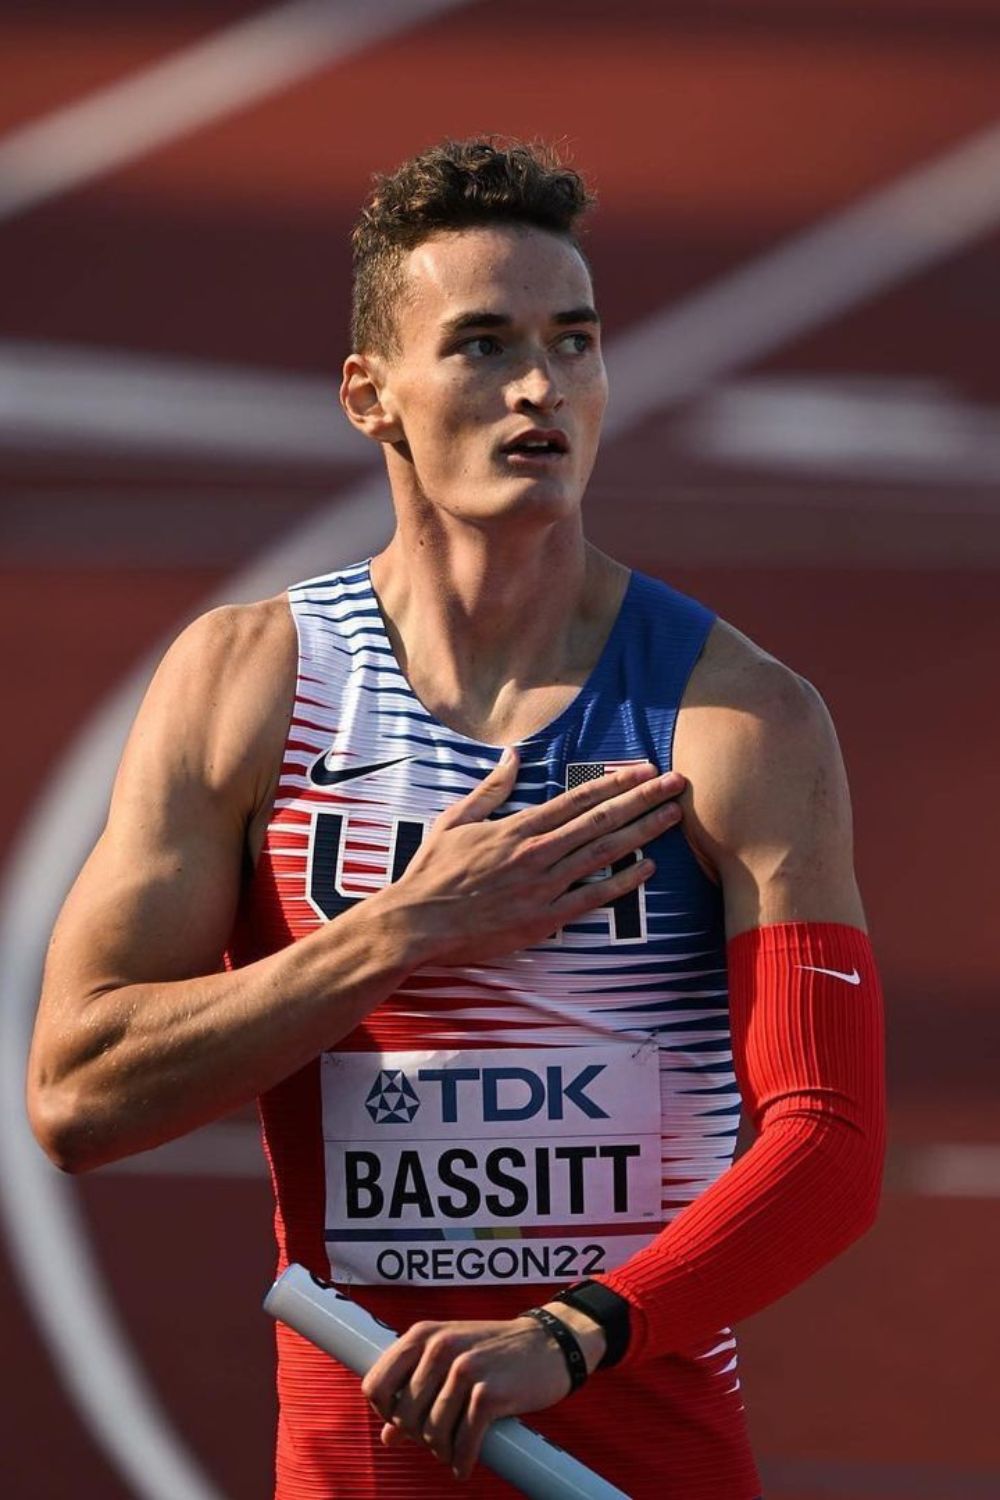 American Track & Field Athlete Trevor Bassitt